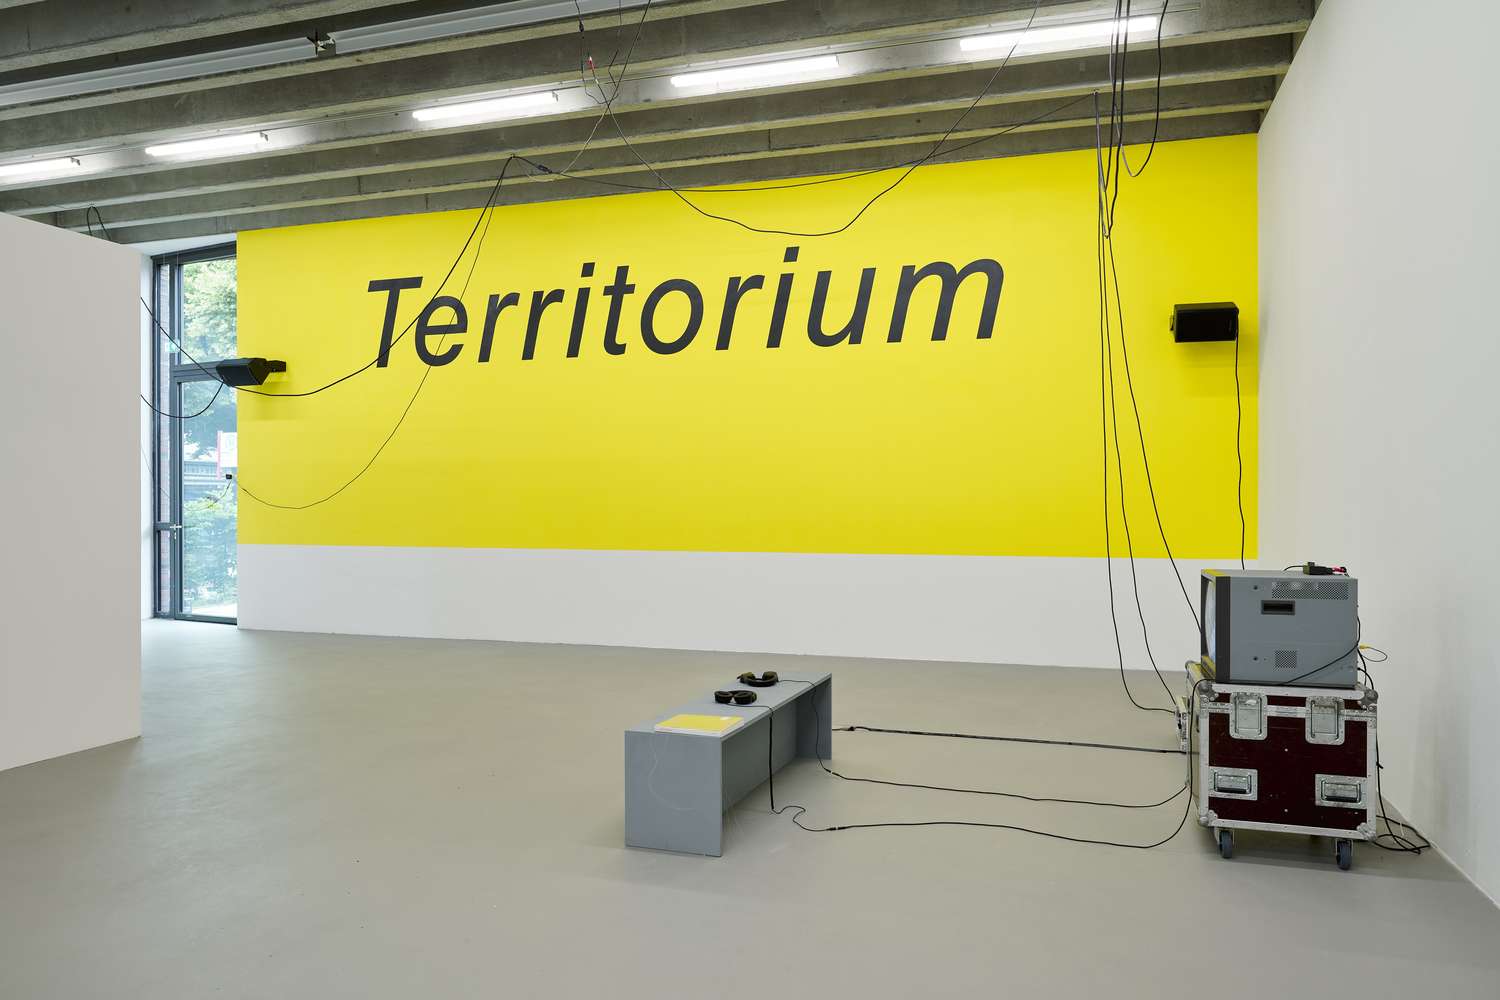 Eine große Wand wurde gelb gestrichen und darauf in großen Lettern geplottet: Territorium. Es hängen diverse Kabel unter der Decke des Raumes.